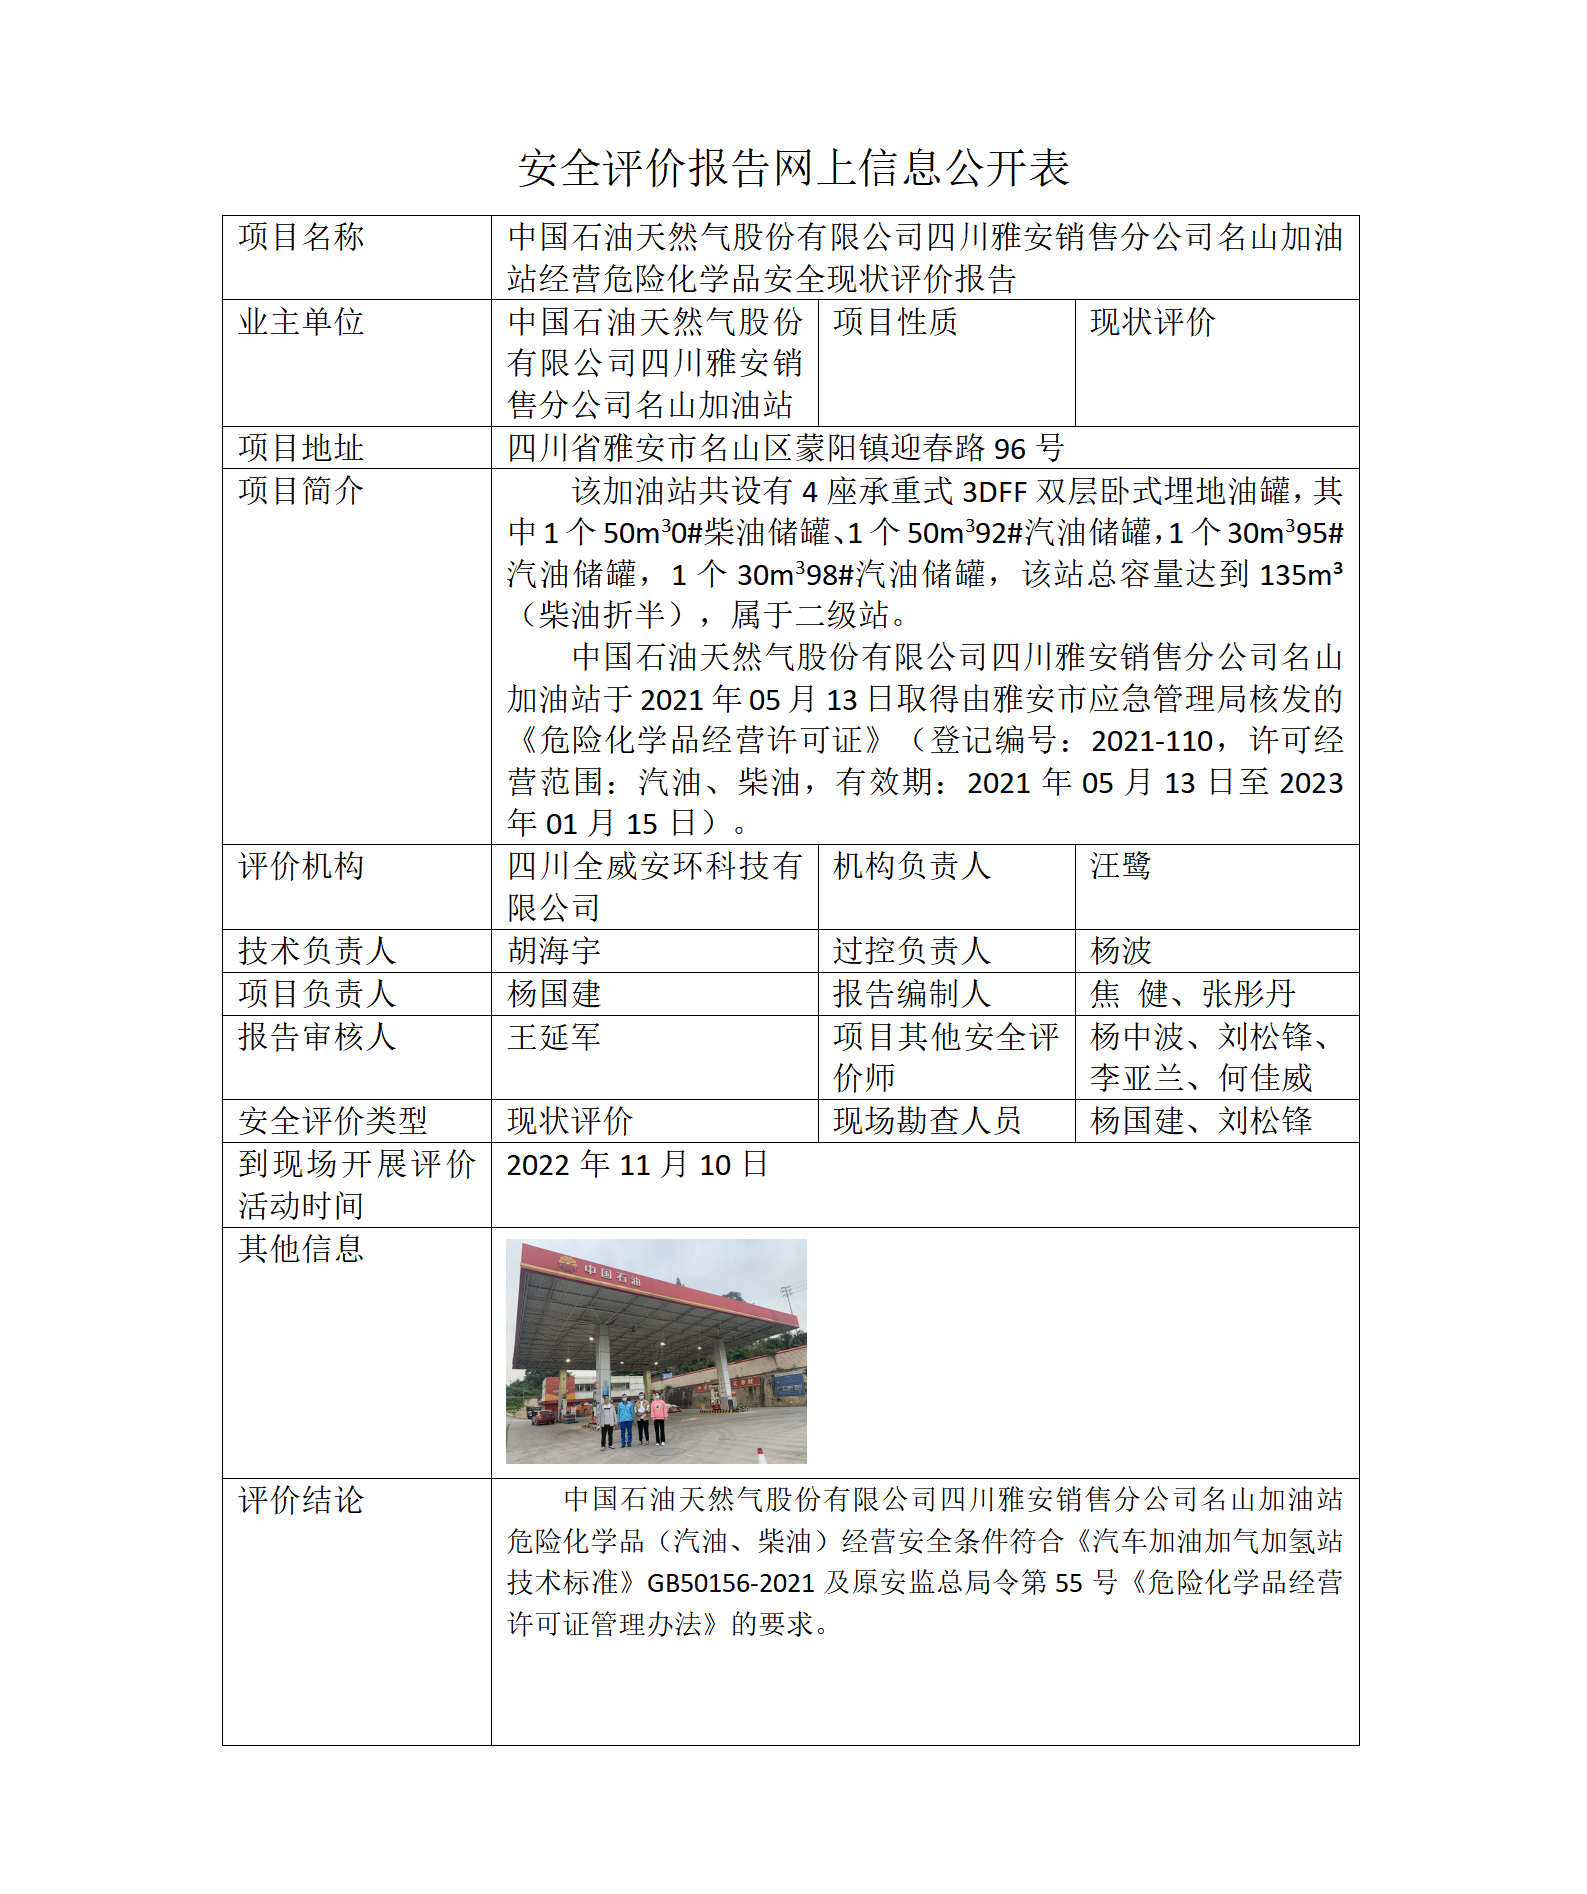 中国石油天然气股份有限公司四川雅安销售分公司名山加油站经营危险化学品安全现状评价